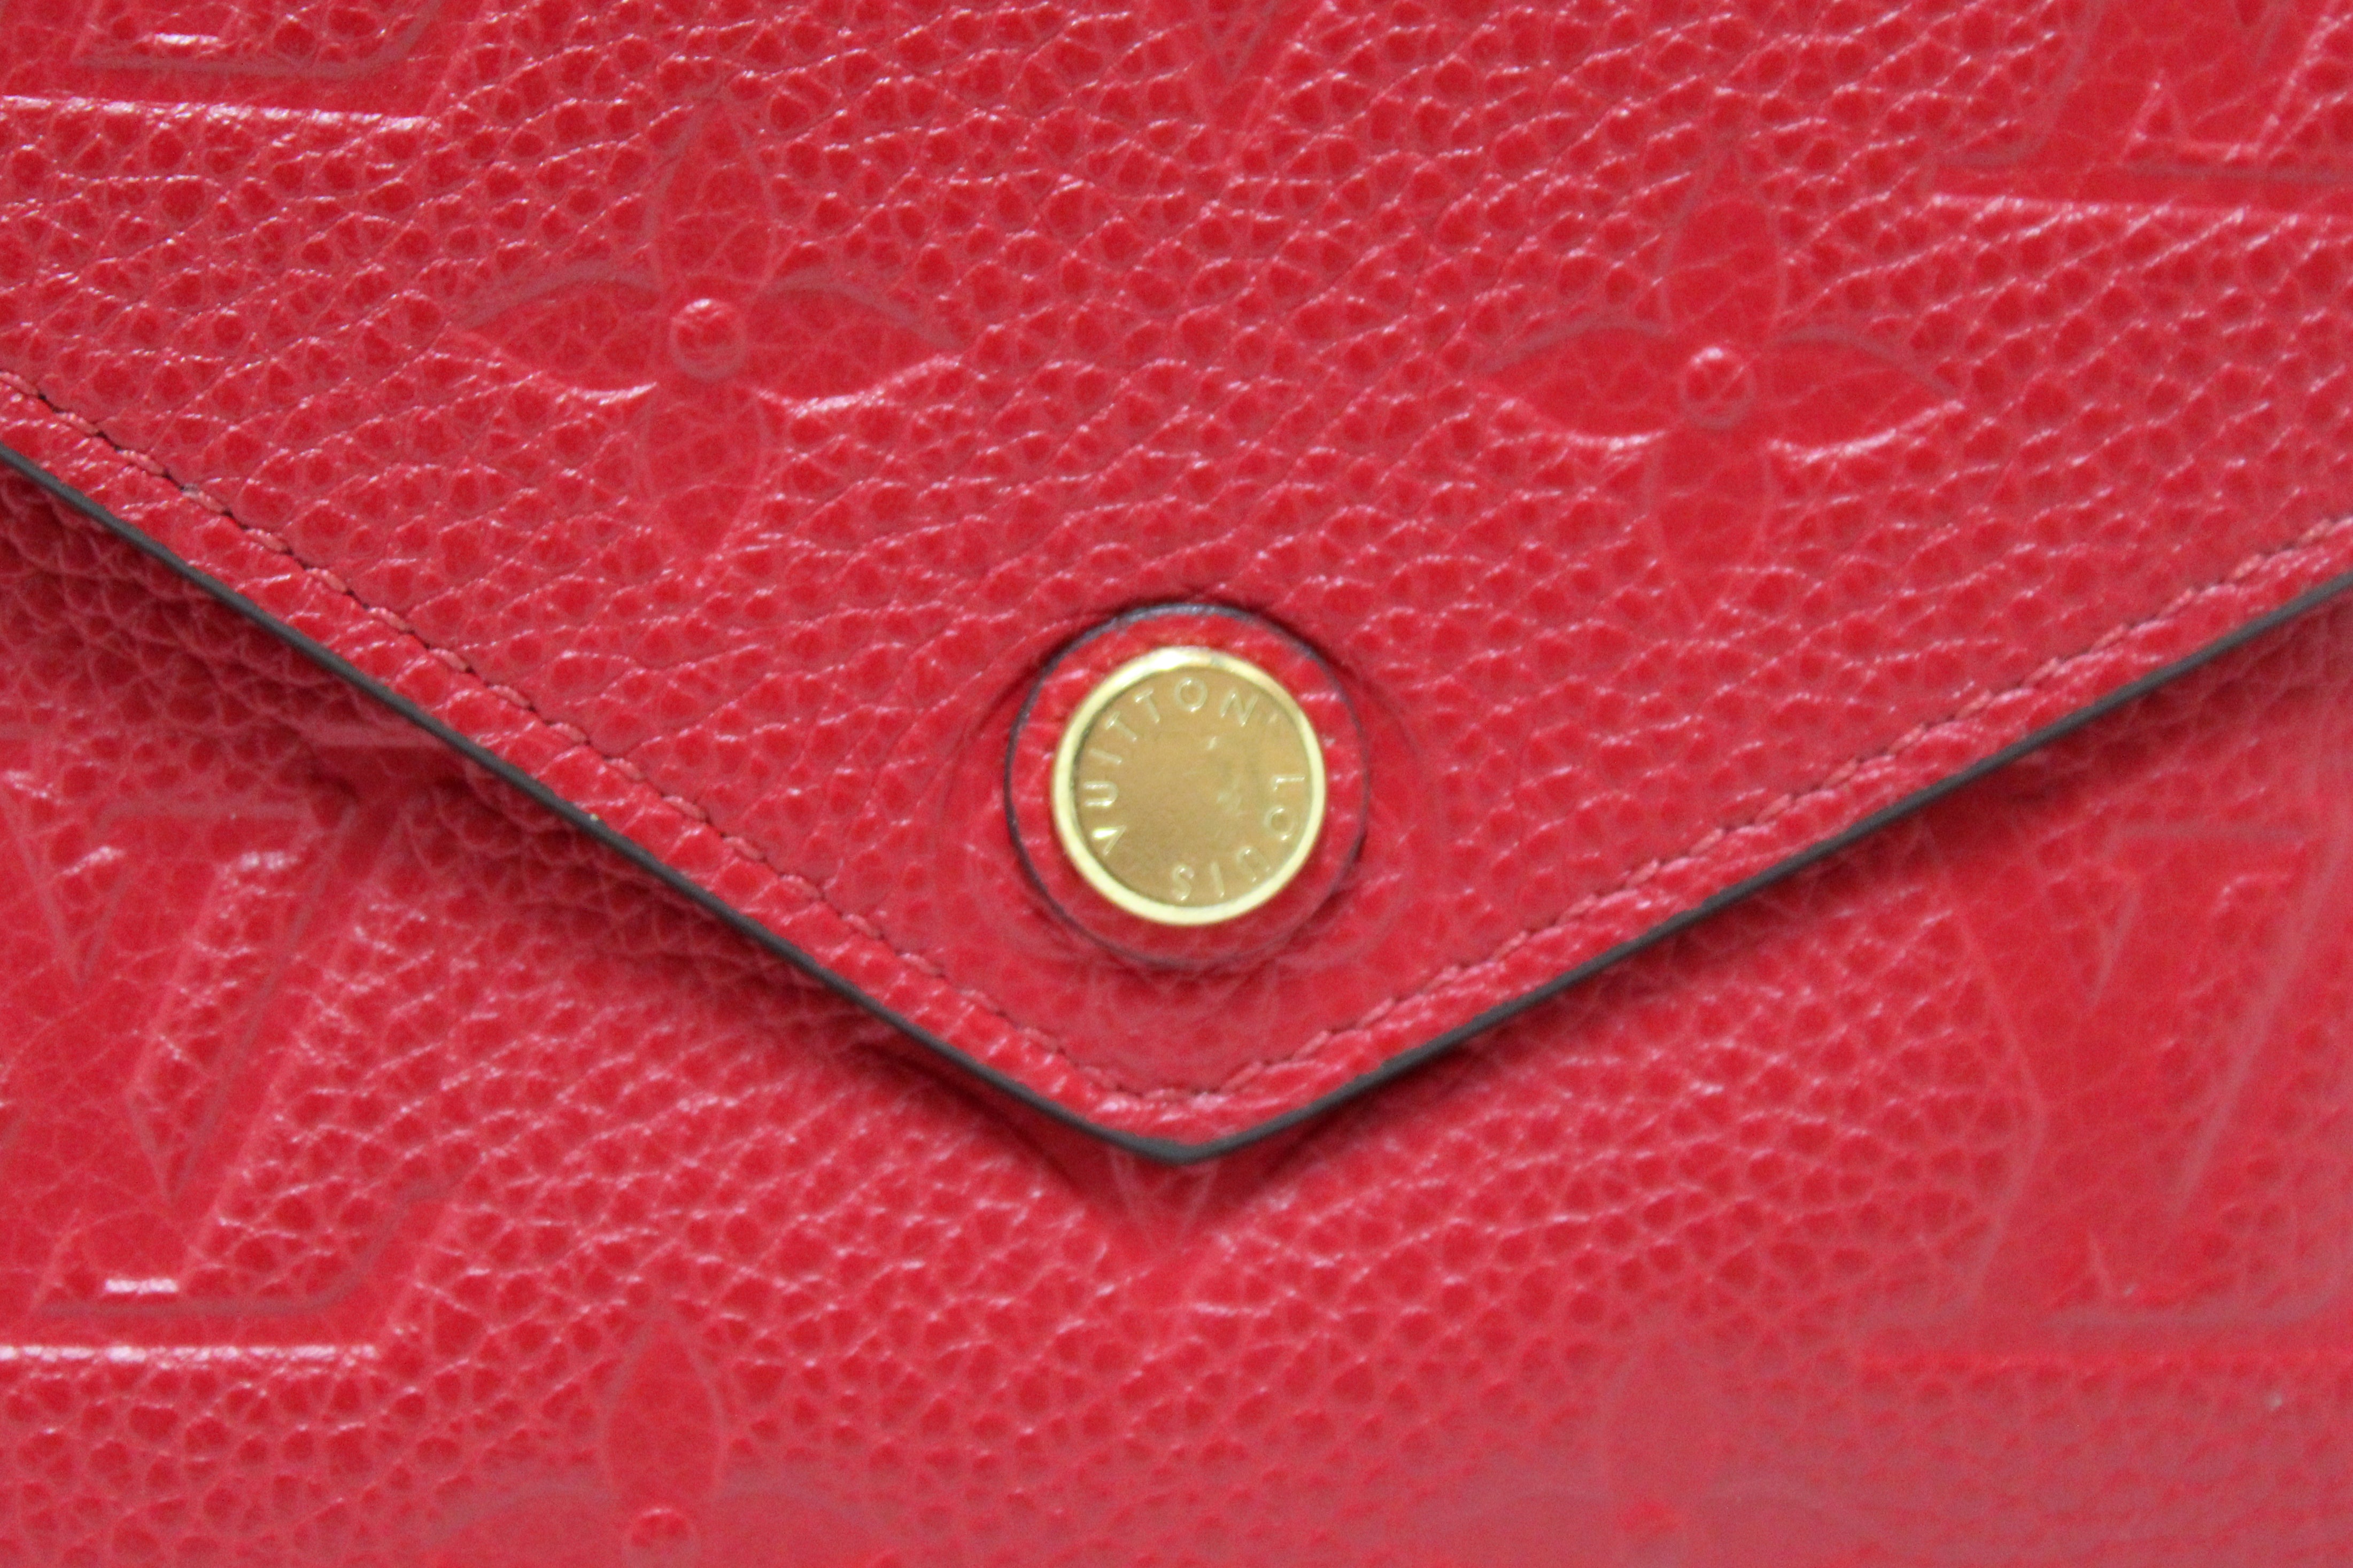 Victorine Wallet Monogram Empreinte Leather - Women - Small